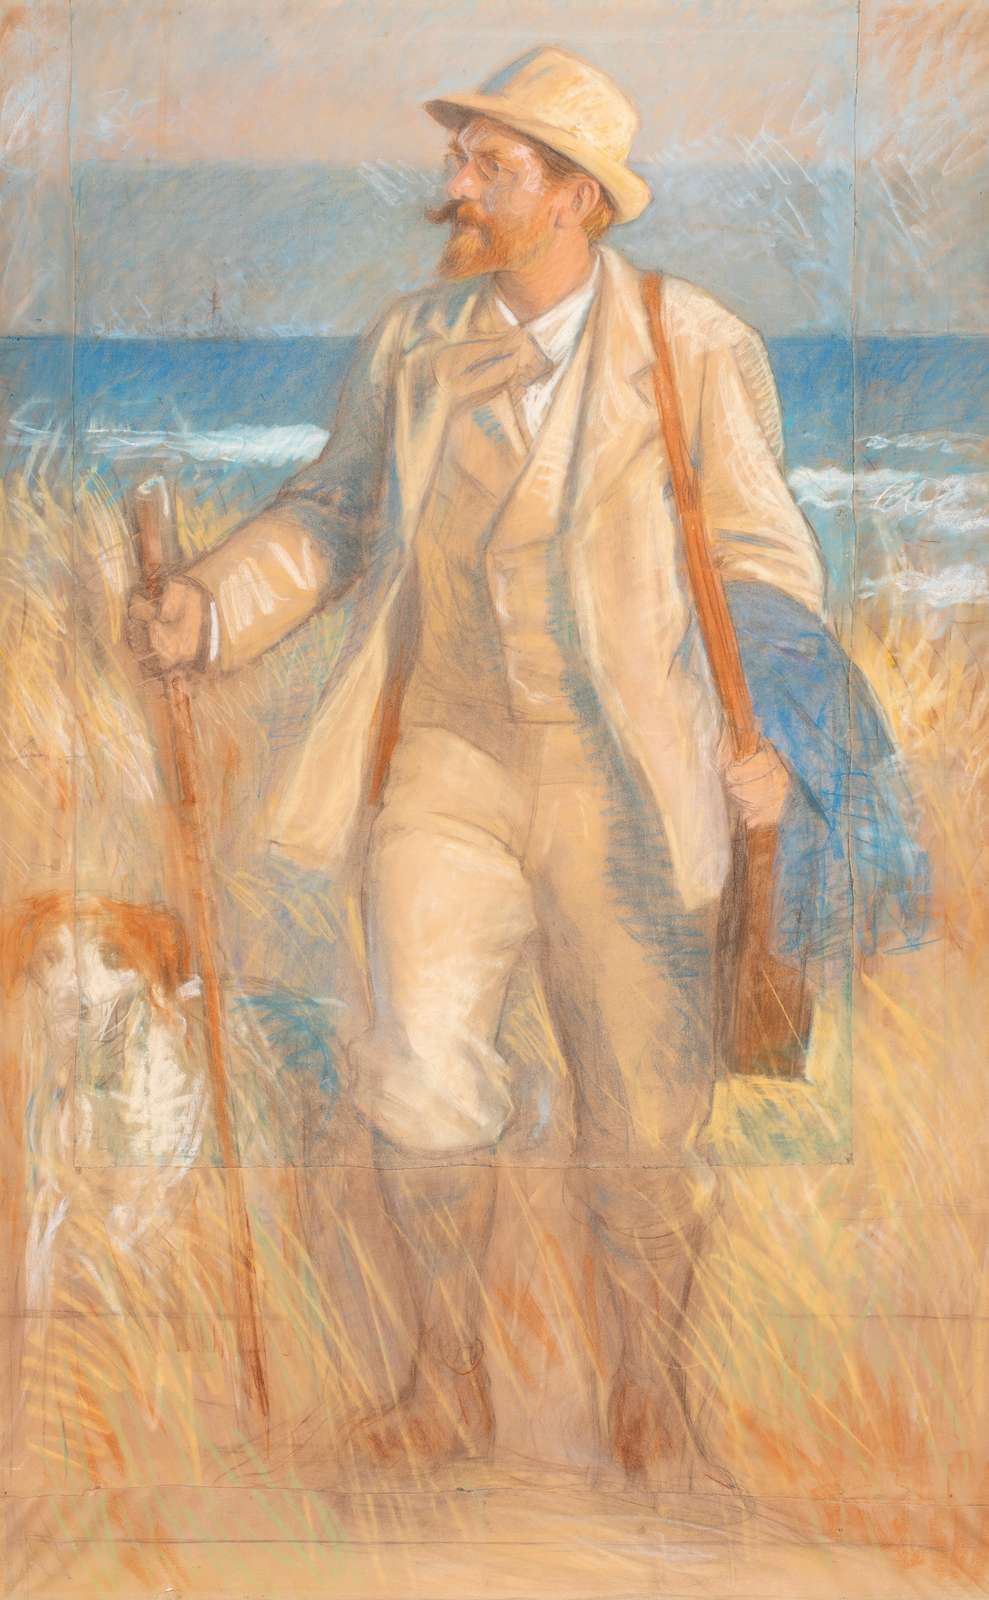 Laurtis Tuxen: P.S. Krøyer går med sin malerkasse i klitten. (1904). Skagens Kunstmuseer